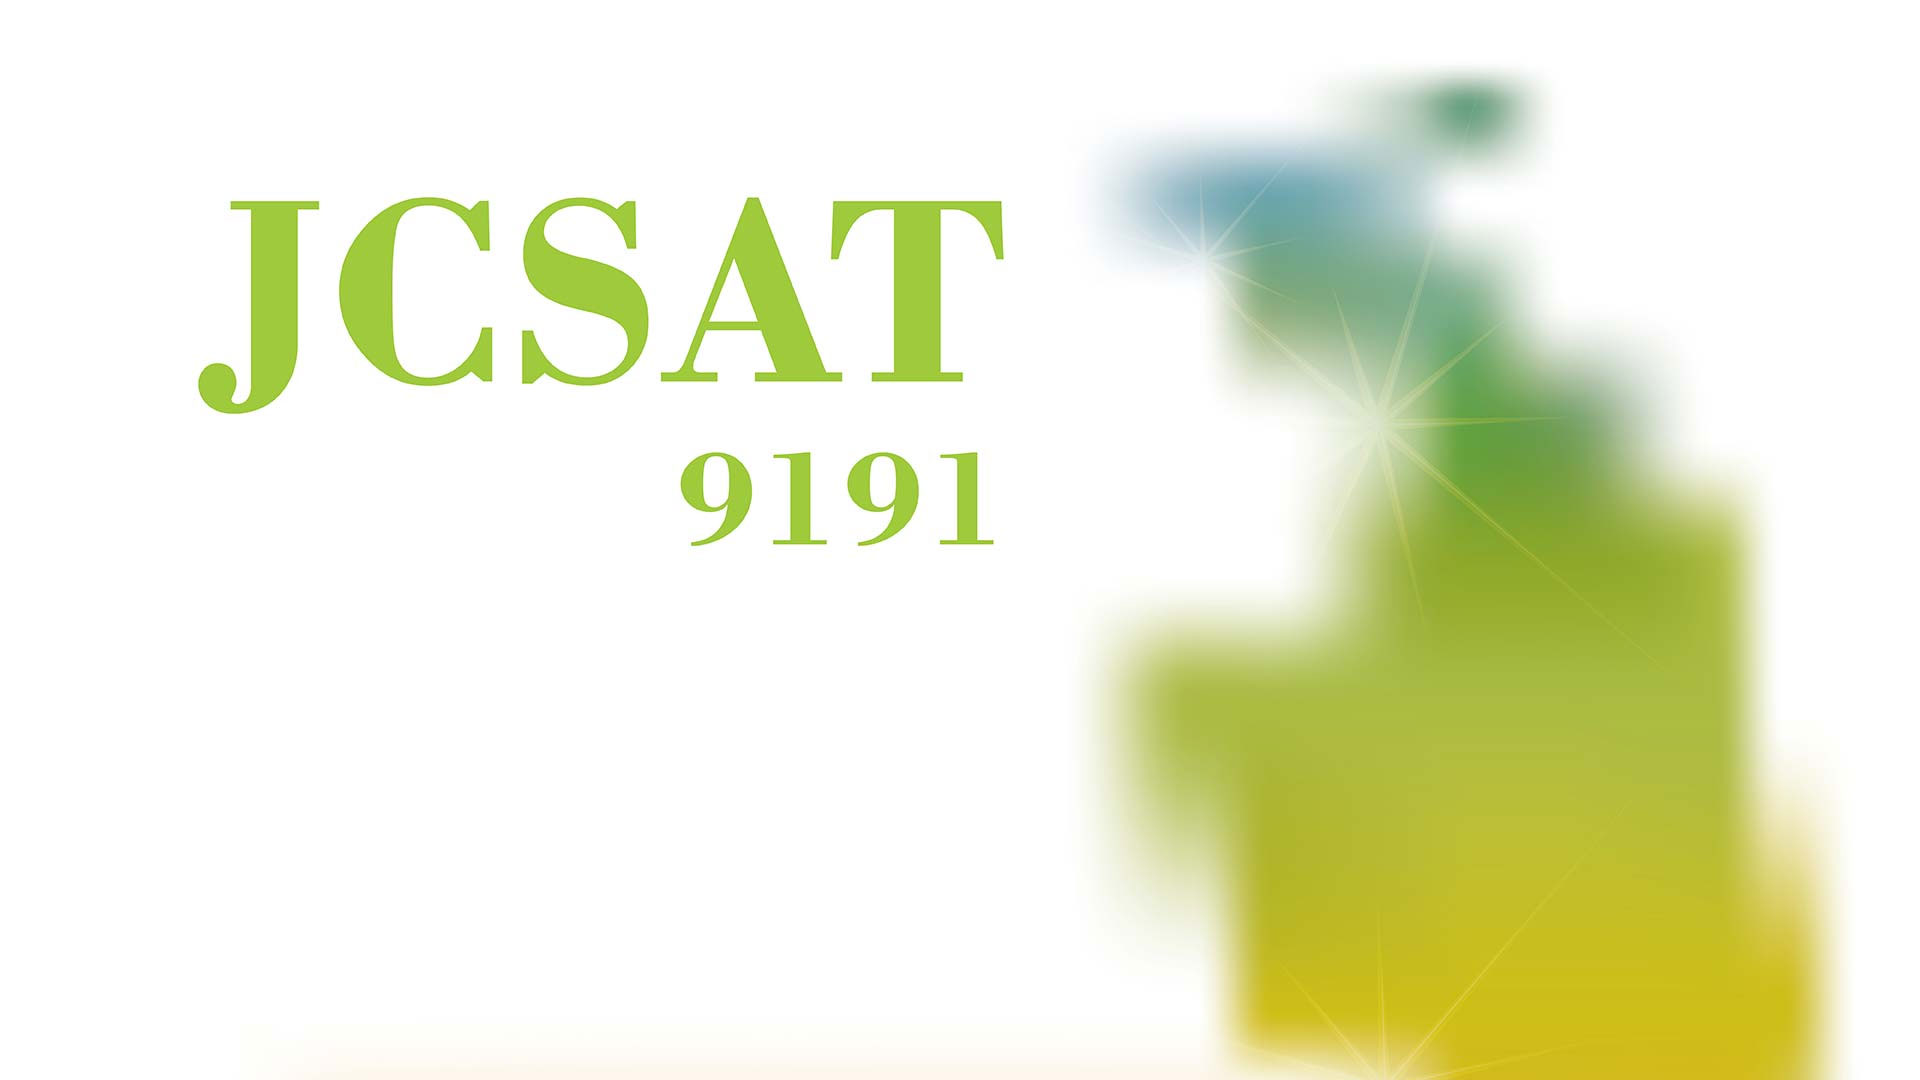 Download Software JCSAT 9191 HD New Update Firmware Receiver